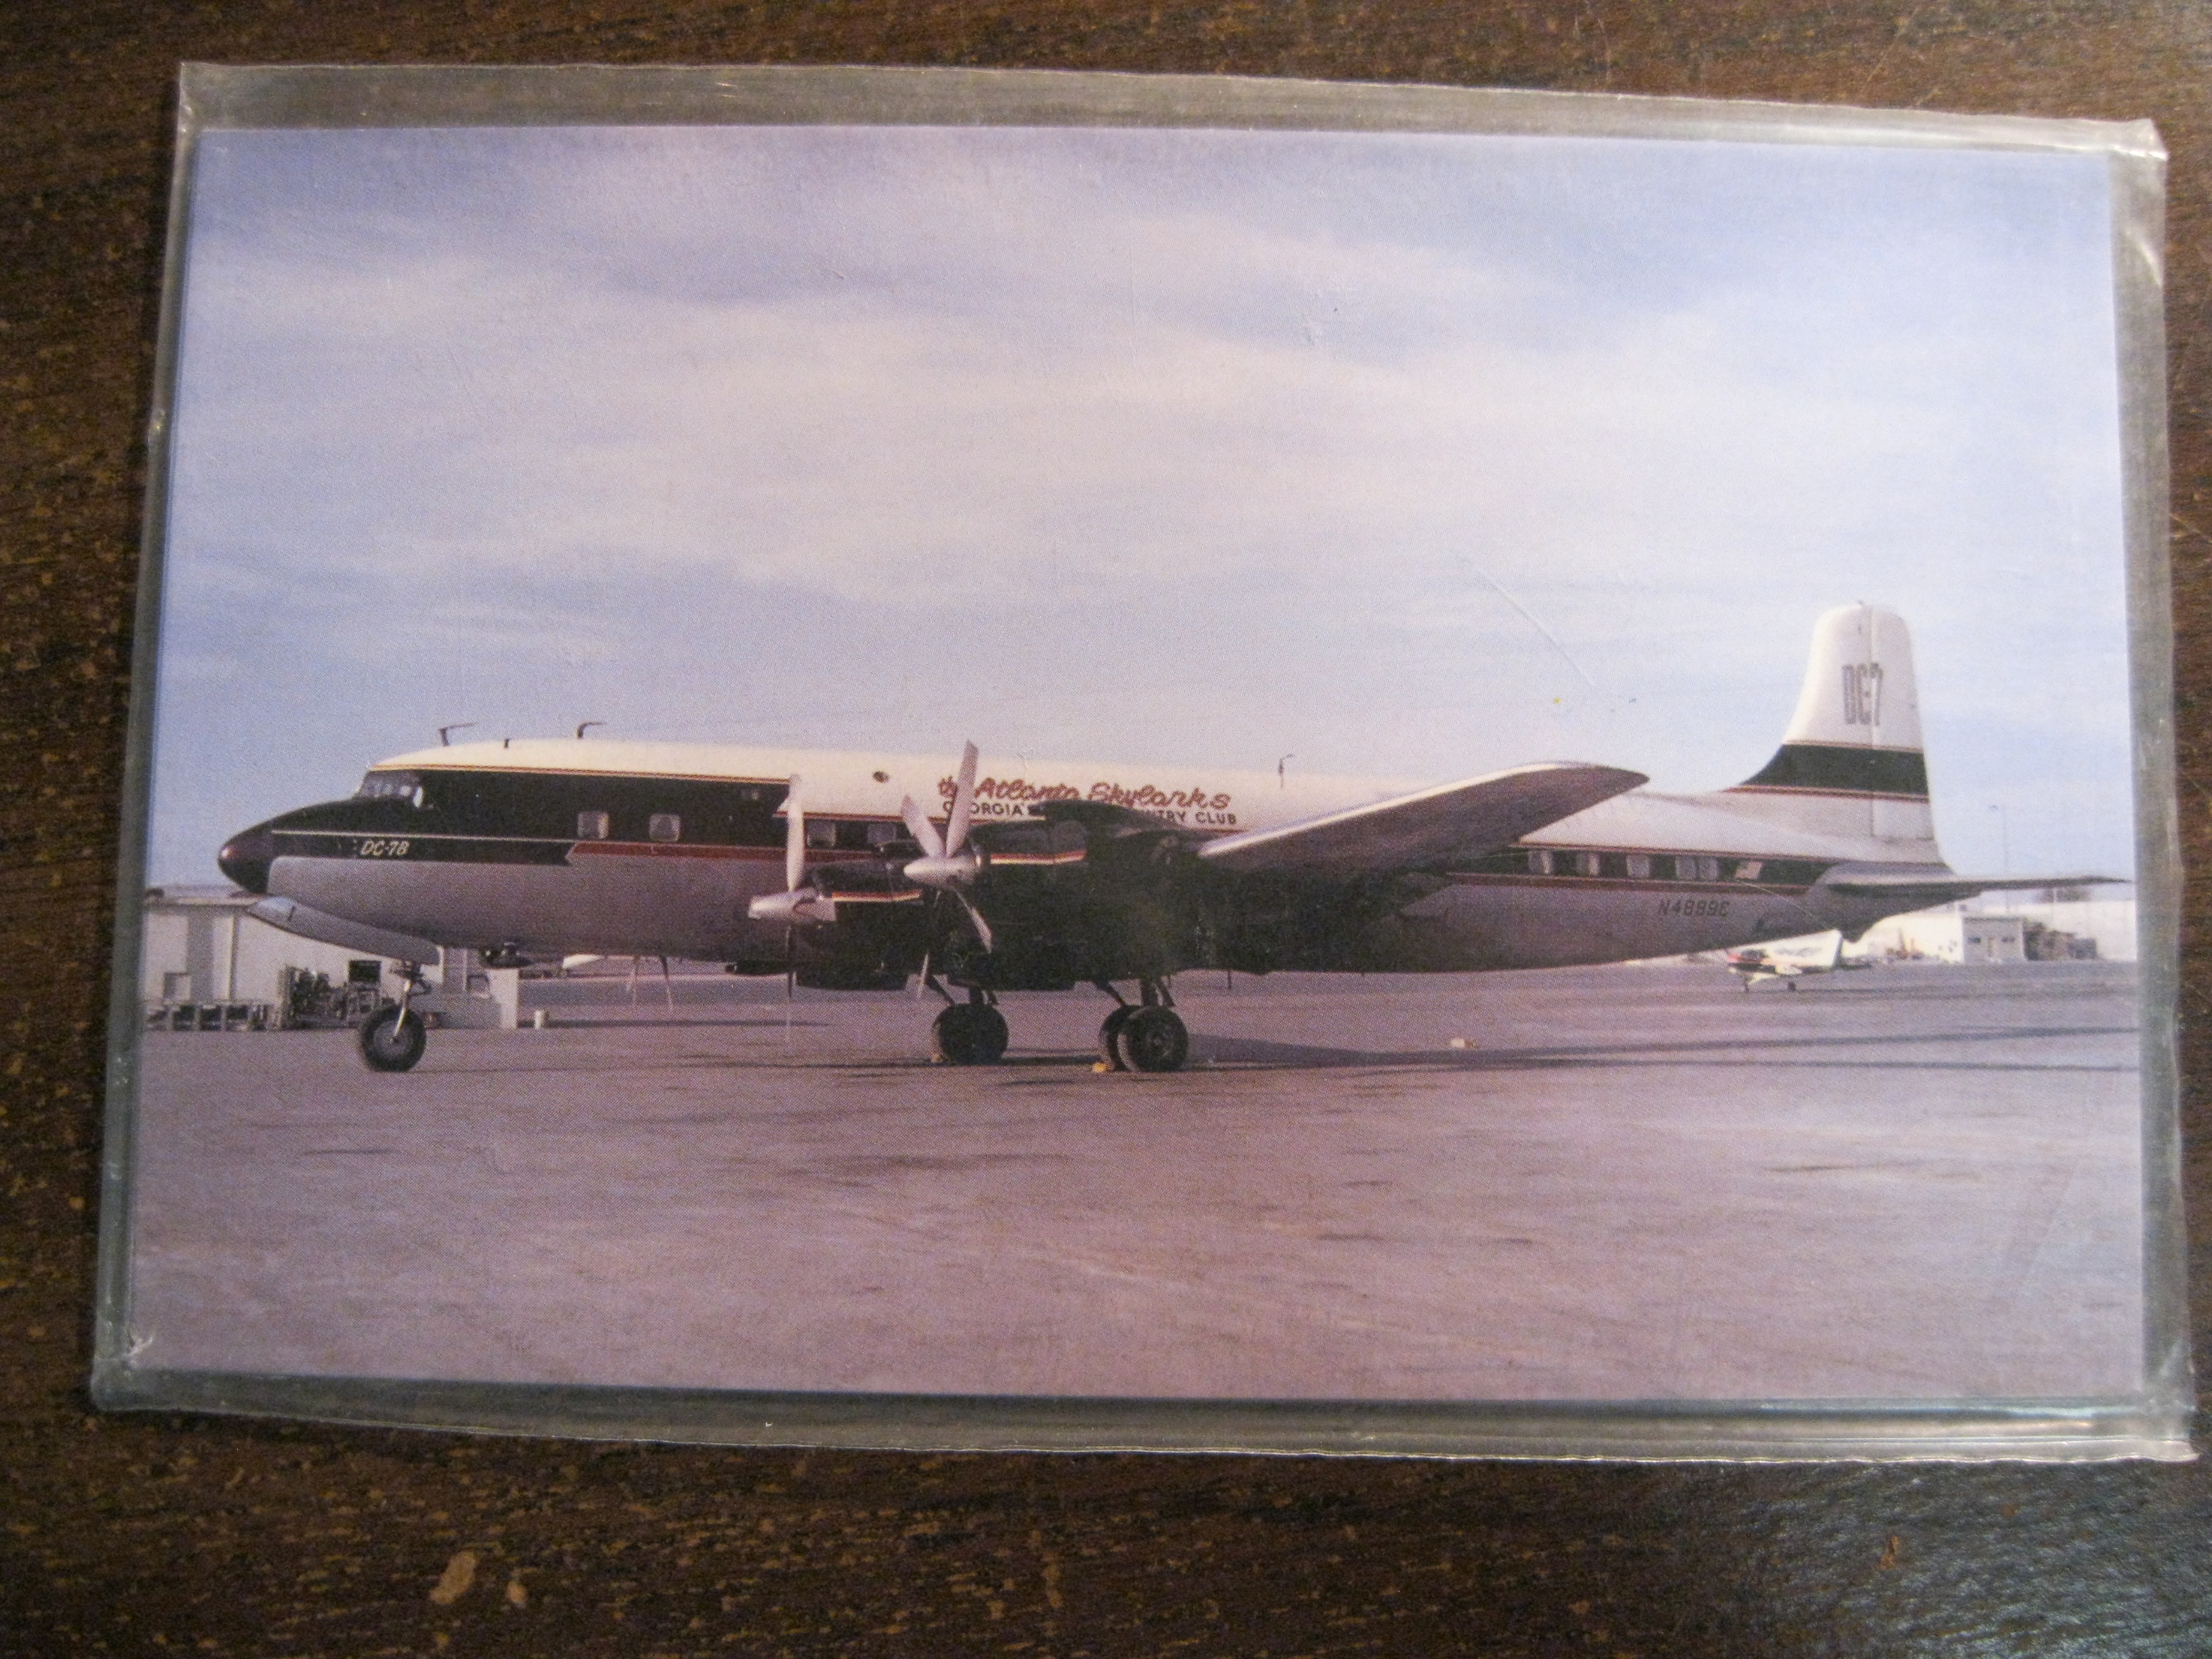 The Atlanta Skylarks Douglas DC-7 post card